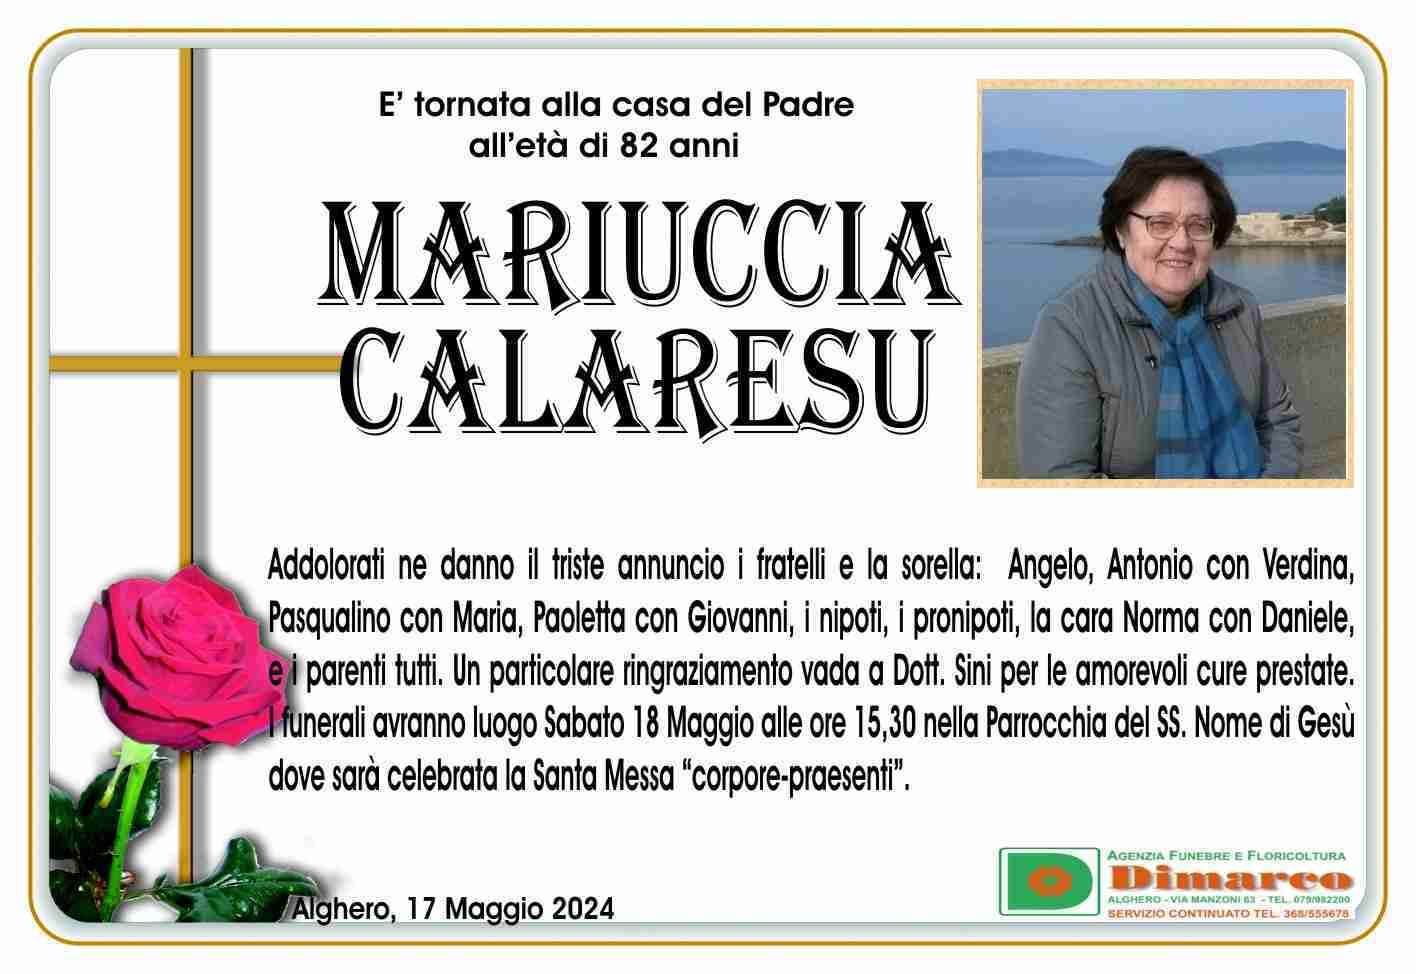 Mariuccia Calaresu